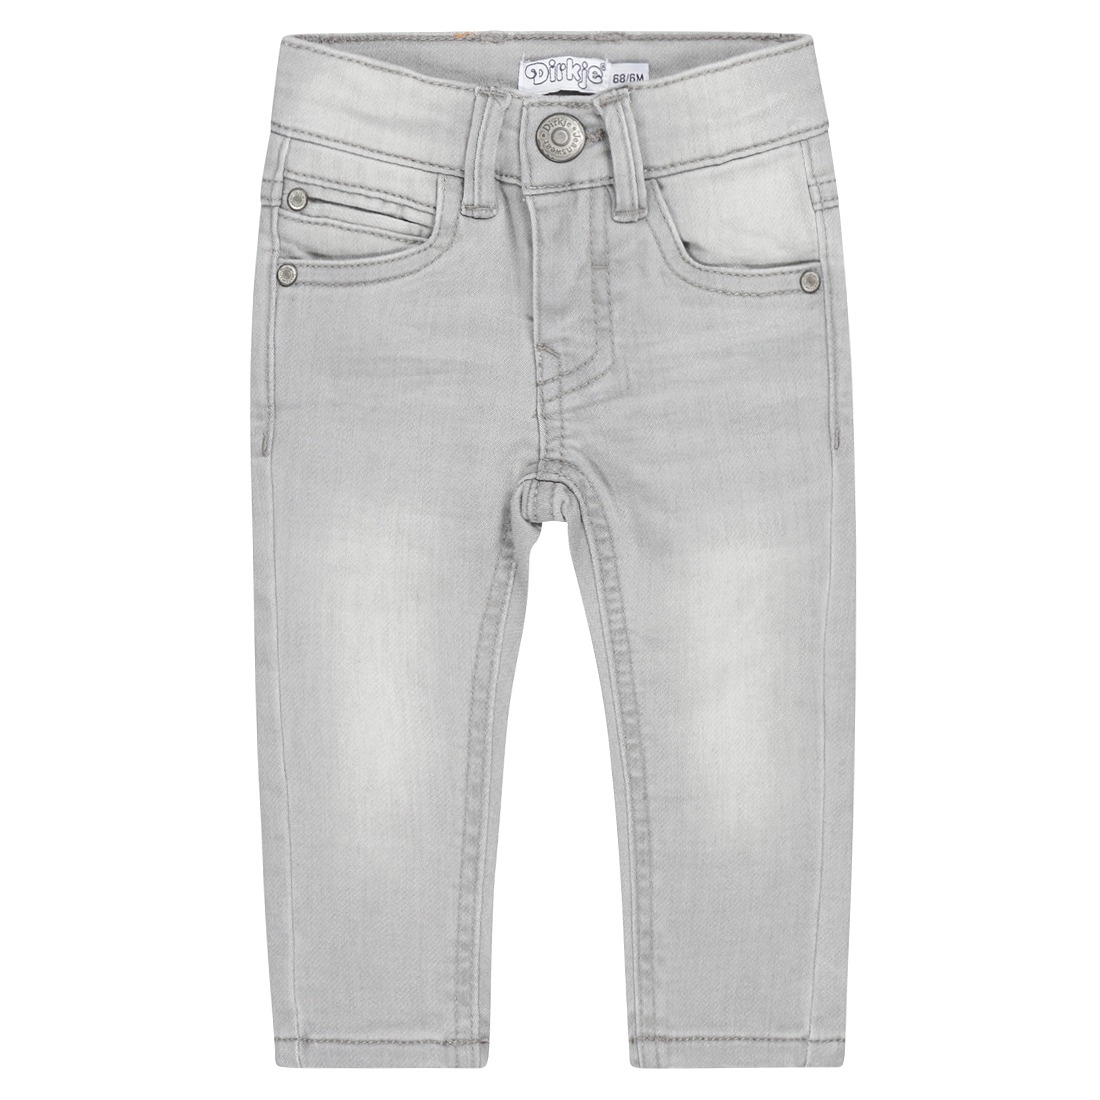 Dirkje: soft grey jeans